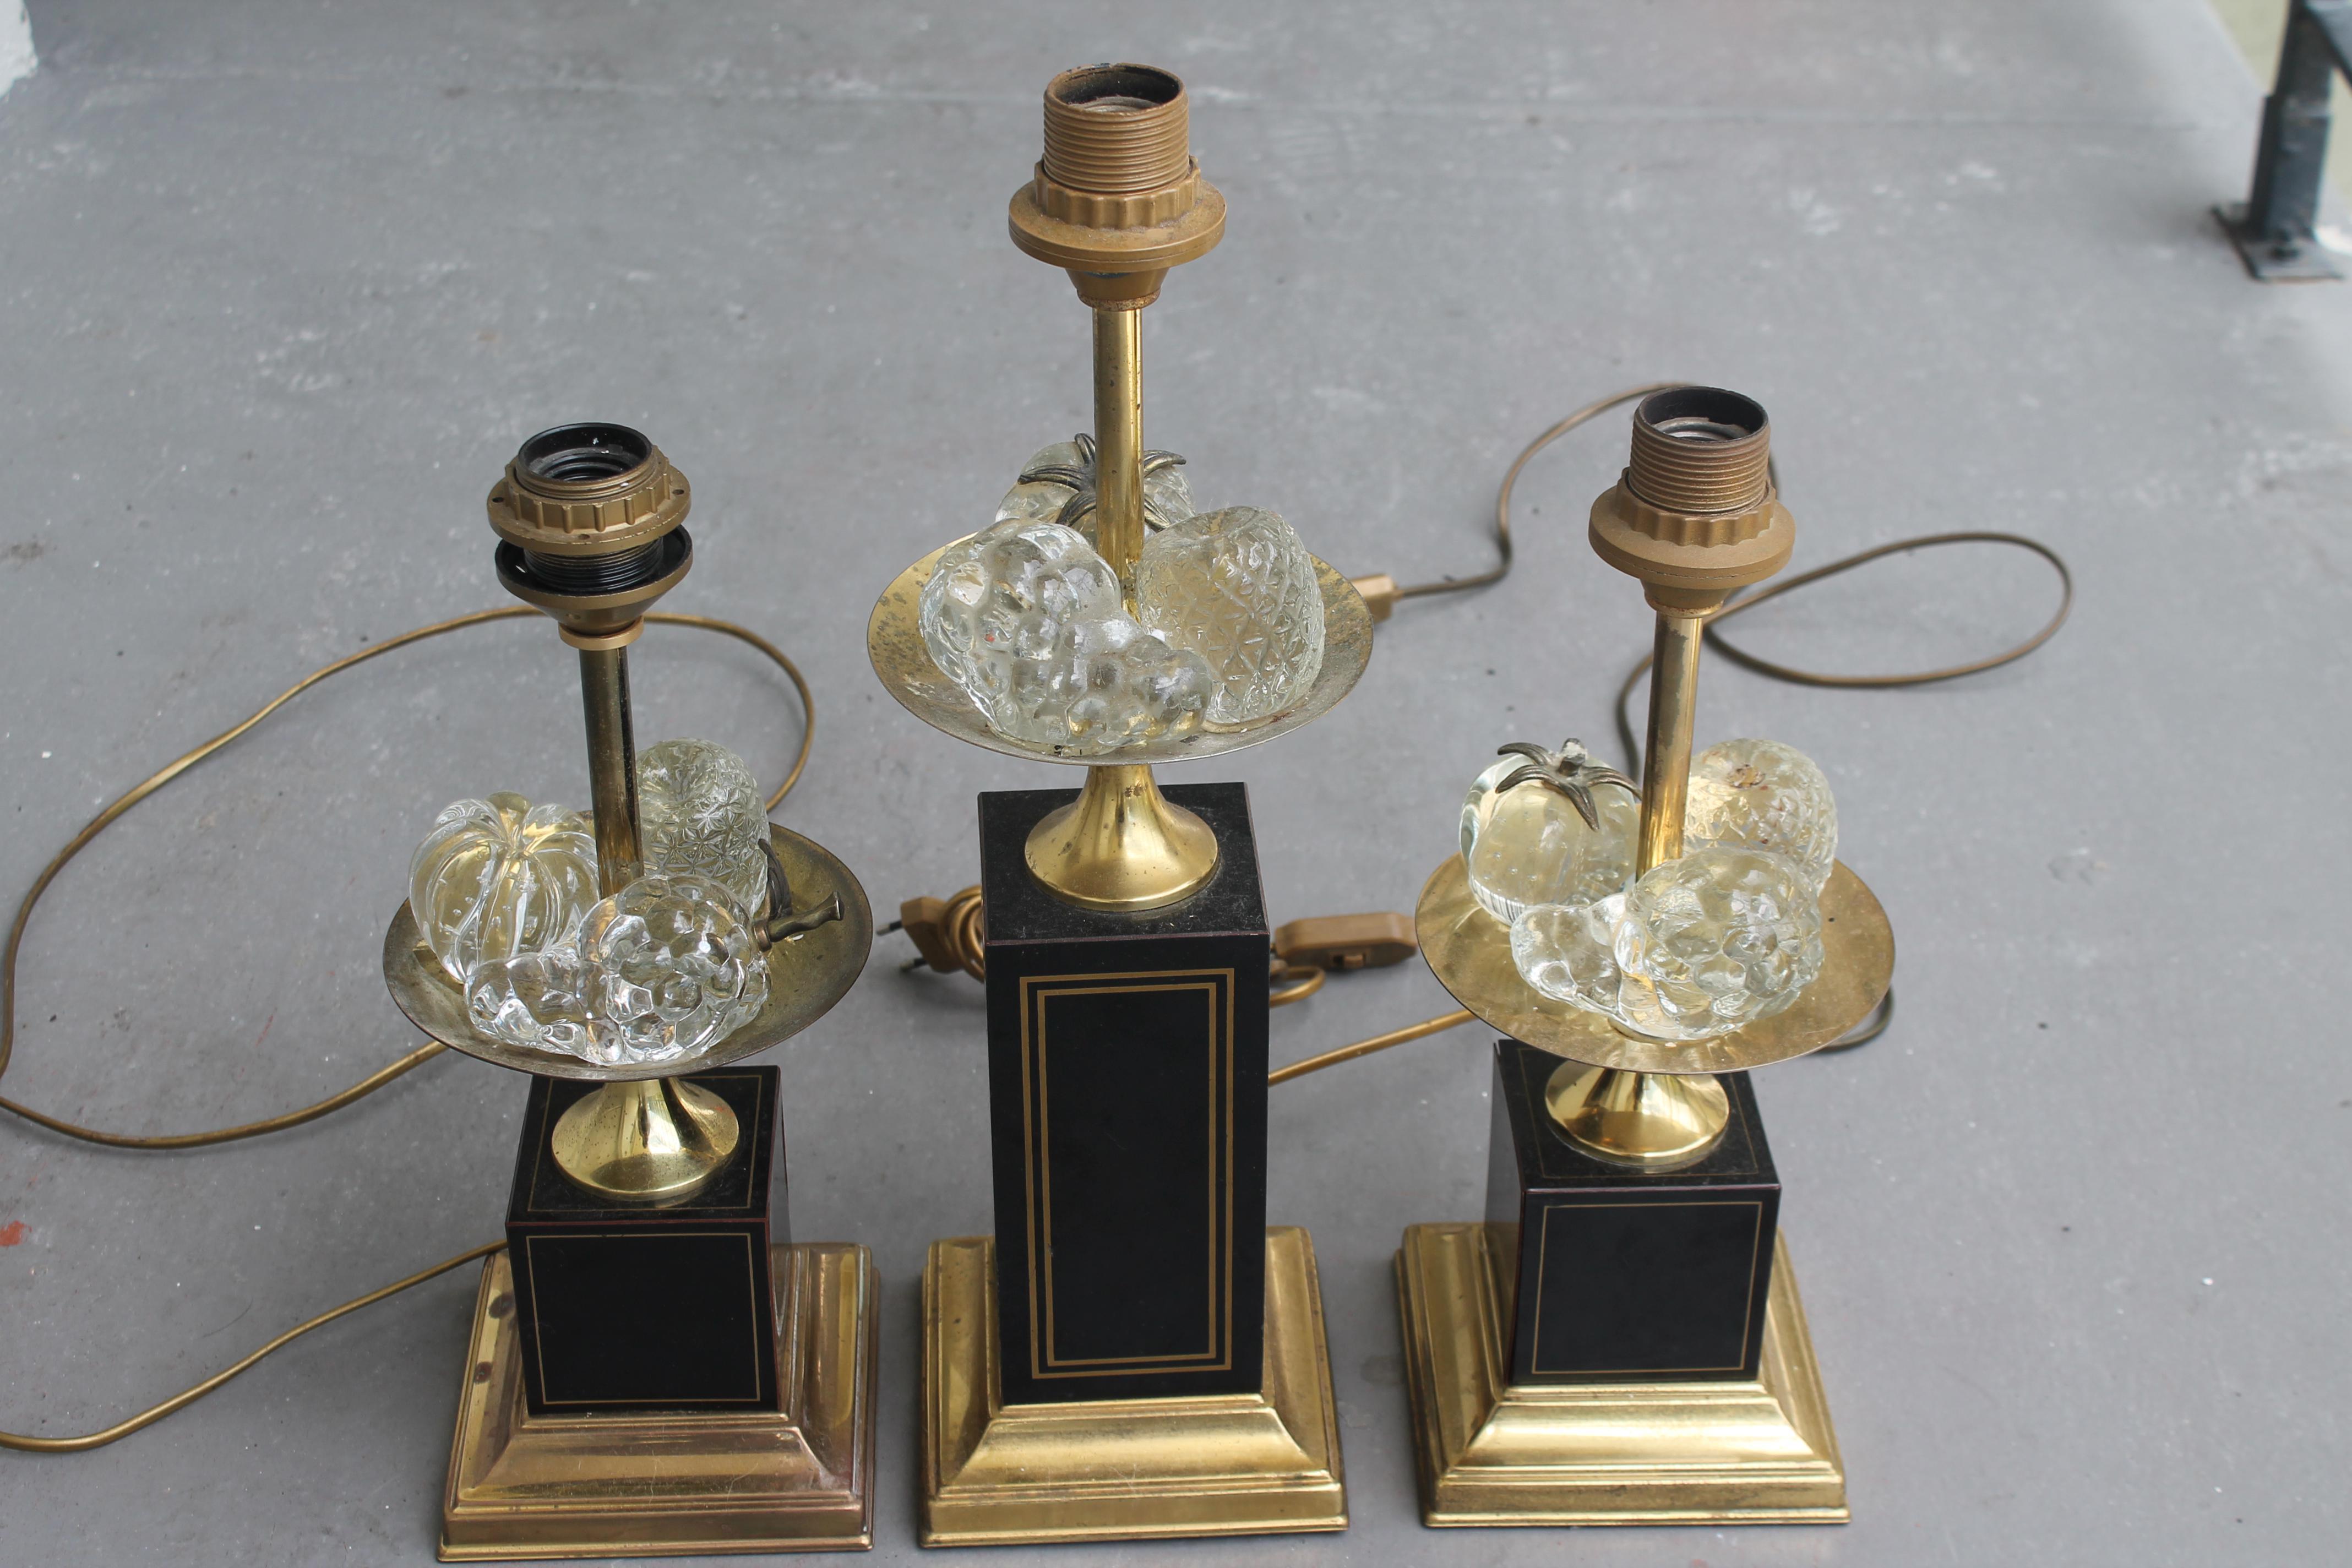 Lampes en bronze et cristal pour plateau de fruits, attribuées à Maison Charles, datant des années 1960. La paire [la plus petite] mesure 7,5